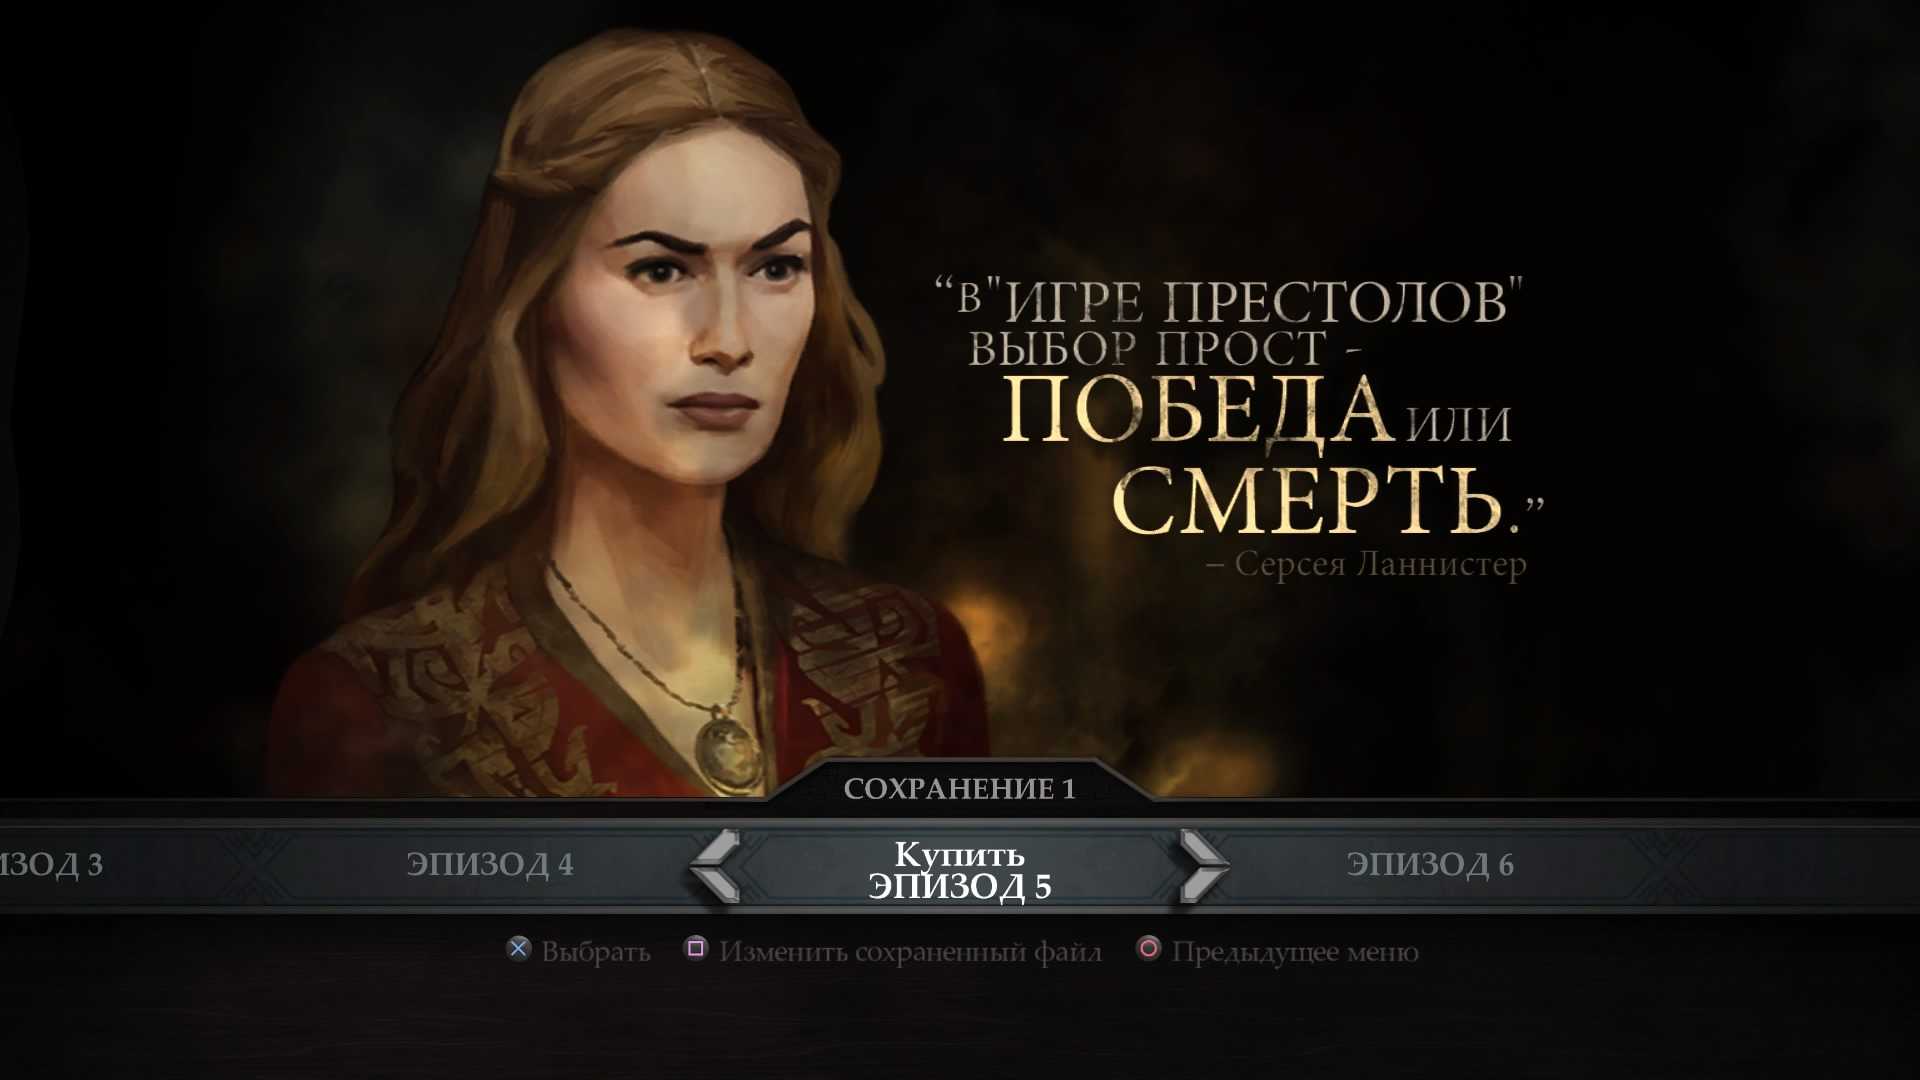 Цитаты из сериала "игры престолов" на русском